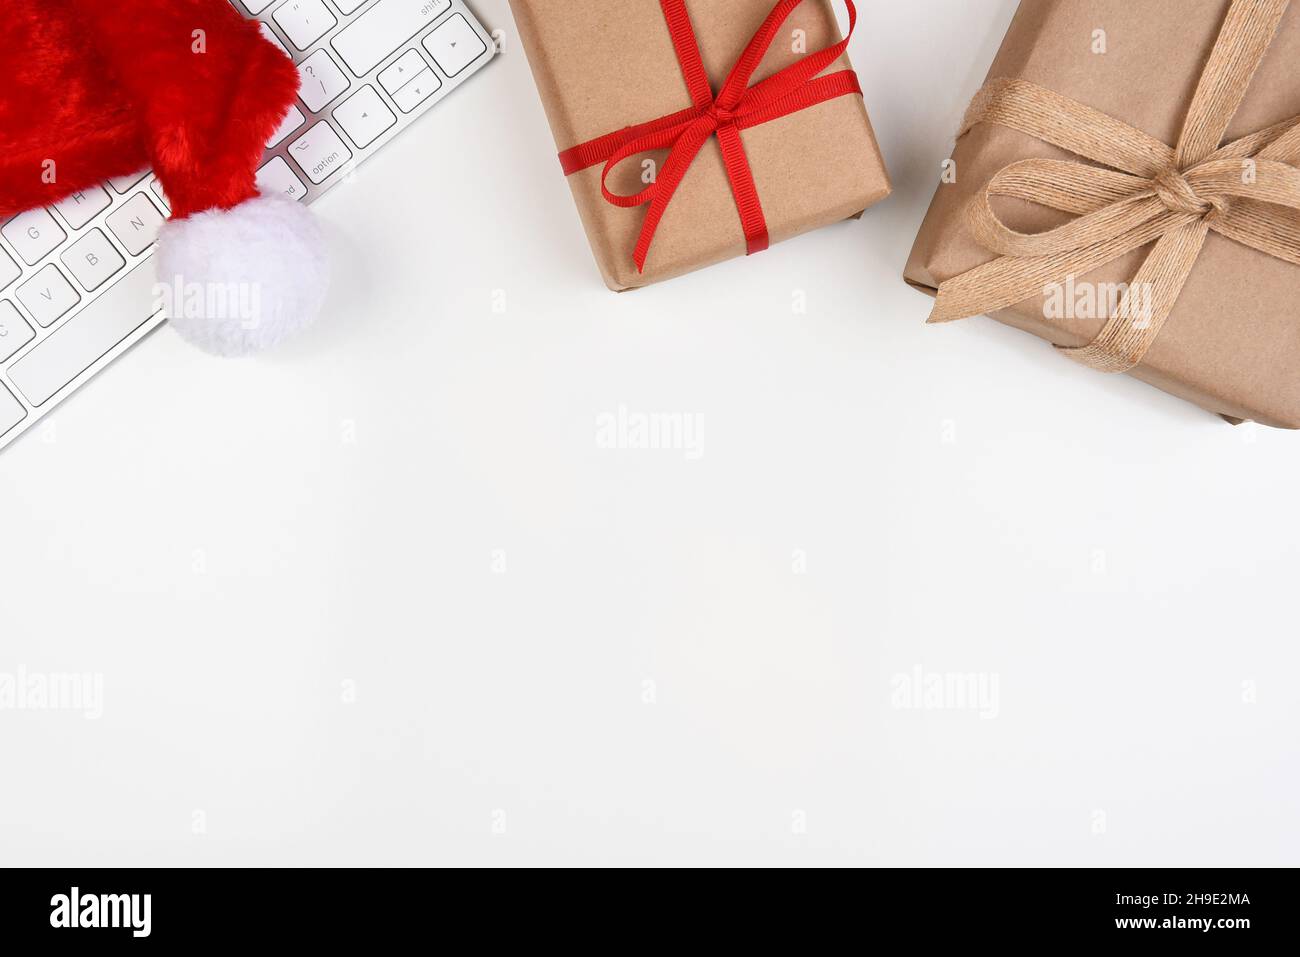 Concept de Noël à plat.Un clavier d'ordinateur avec Santa Hat et deux papier ordinaire emballé présente et espace de copie dans la moitié inférieure de l'image. Banque D'Images